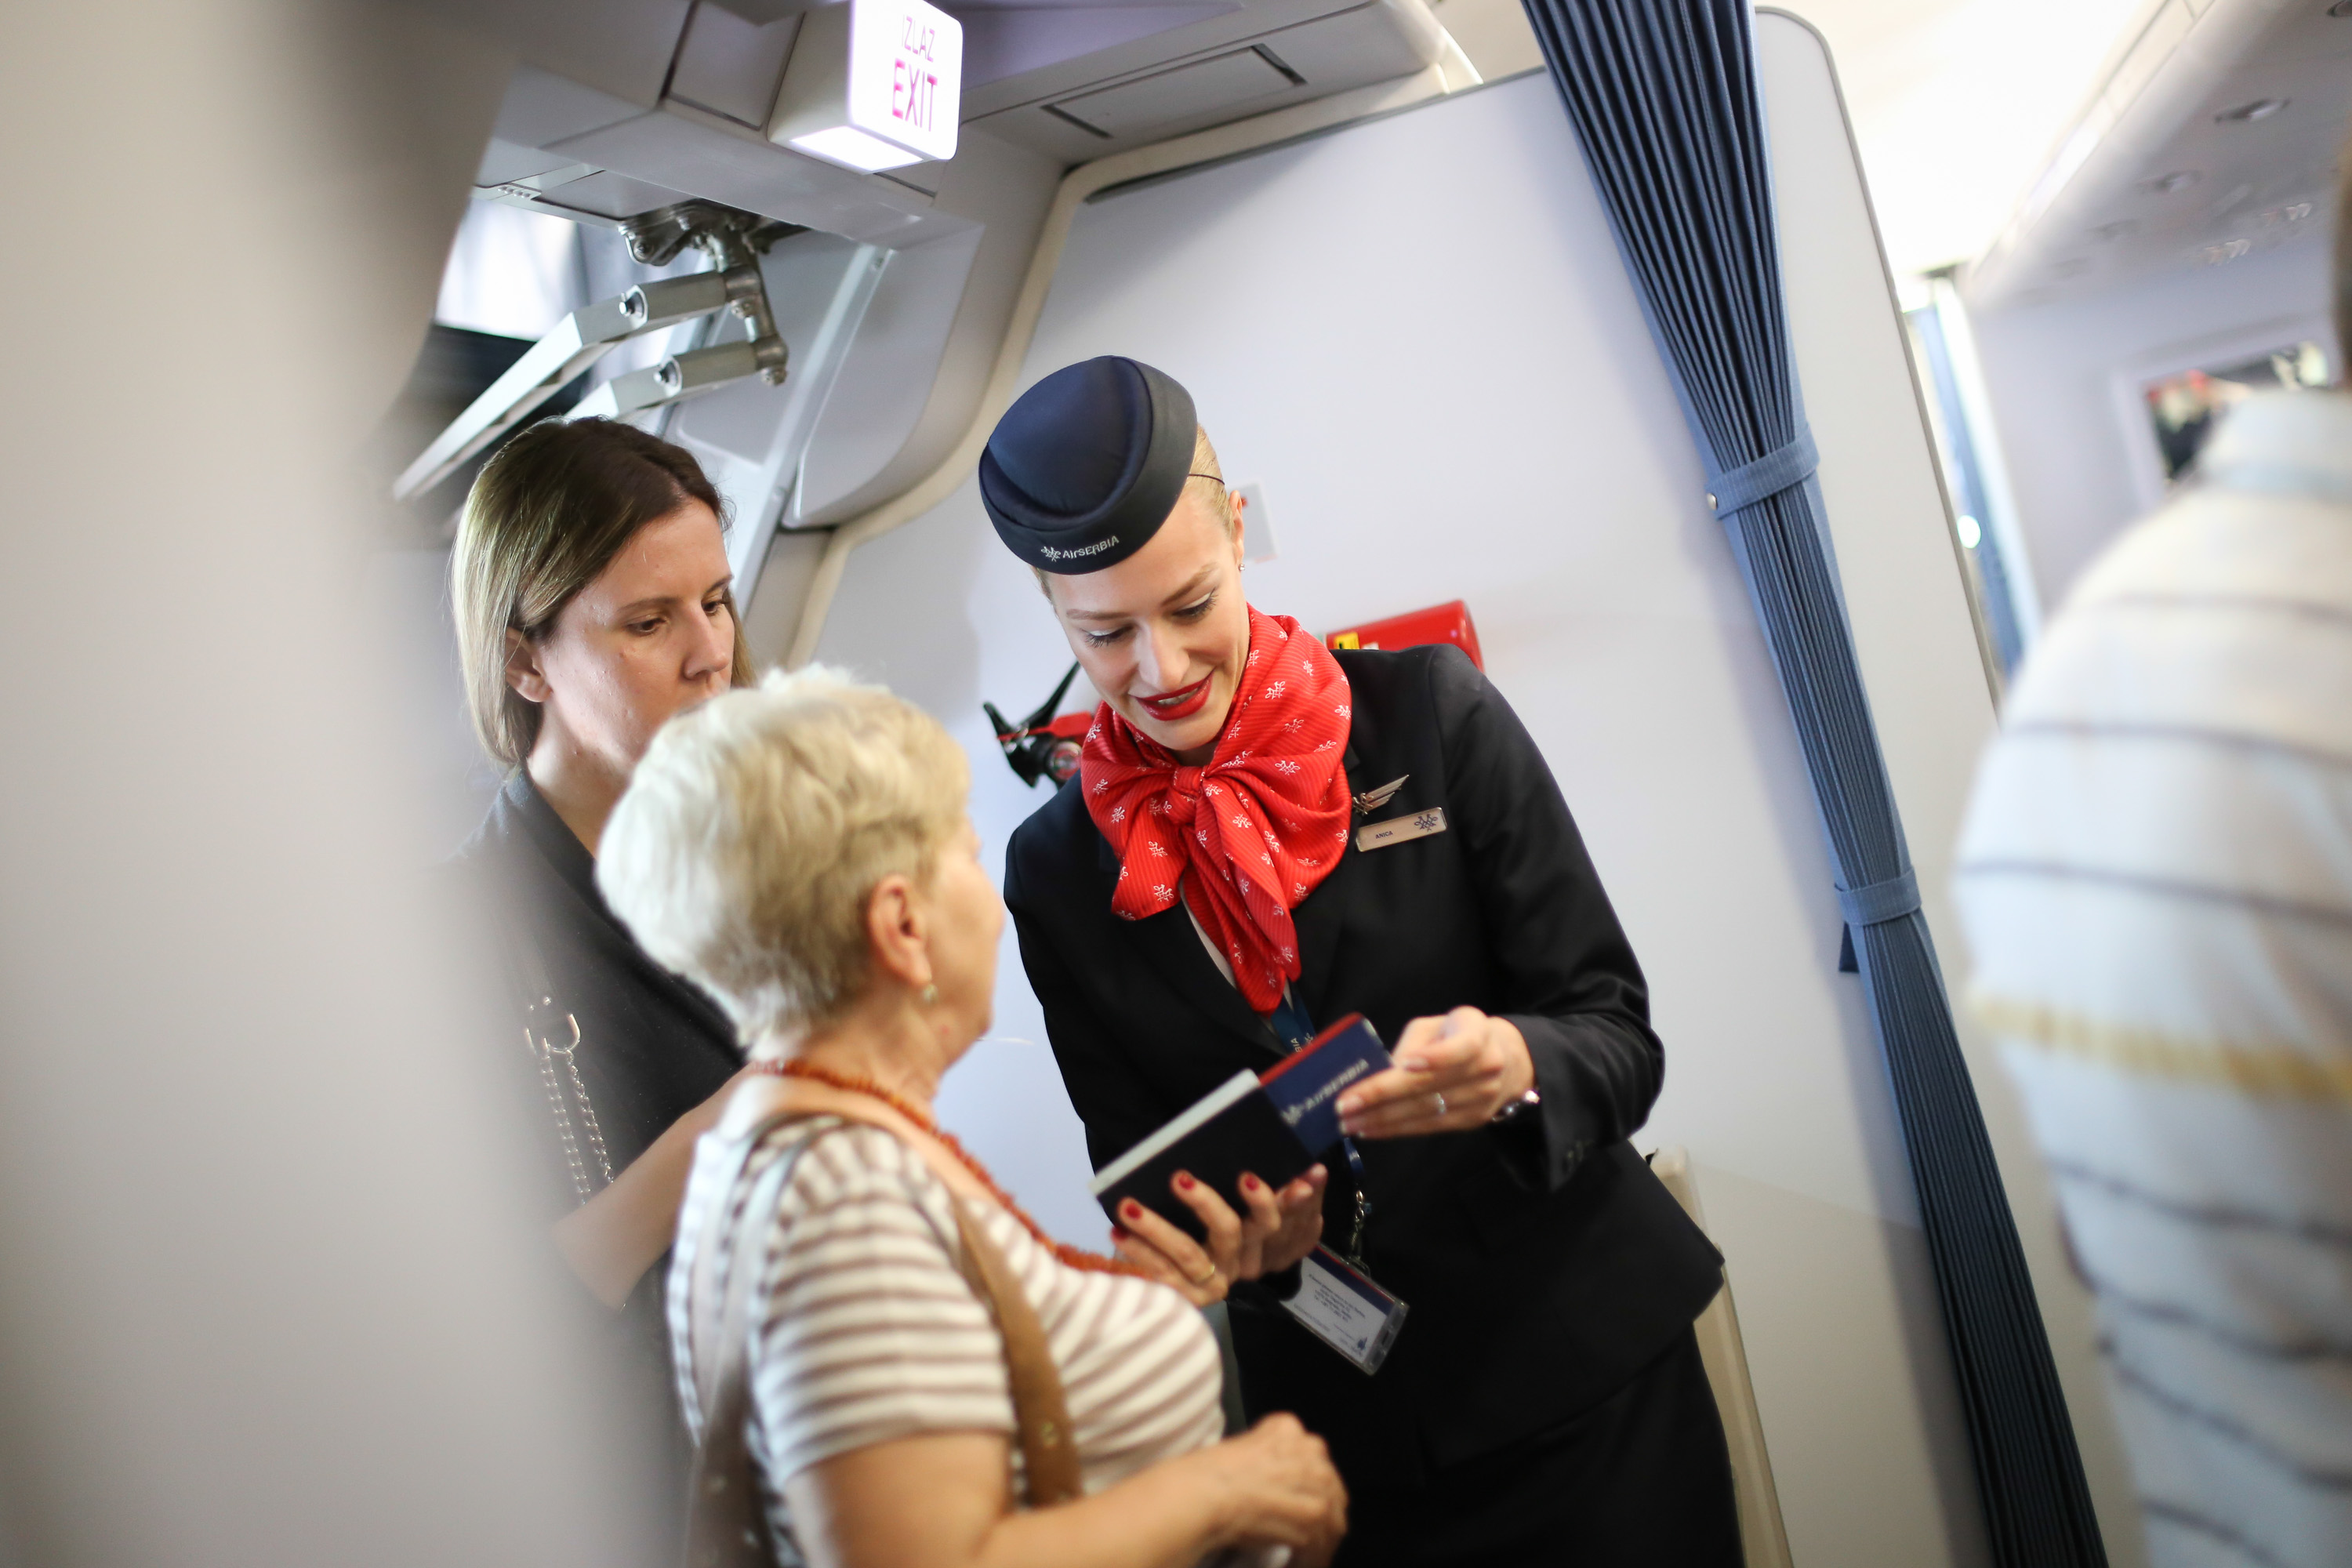 Verovatno jedan od najboljih kabinskih proizvoda u široj regiji. Kabinsko osoblje najviše zaslužno / Foto: Air Serbia